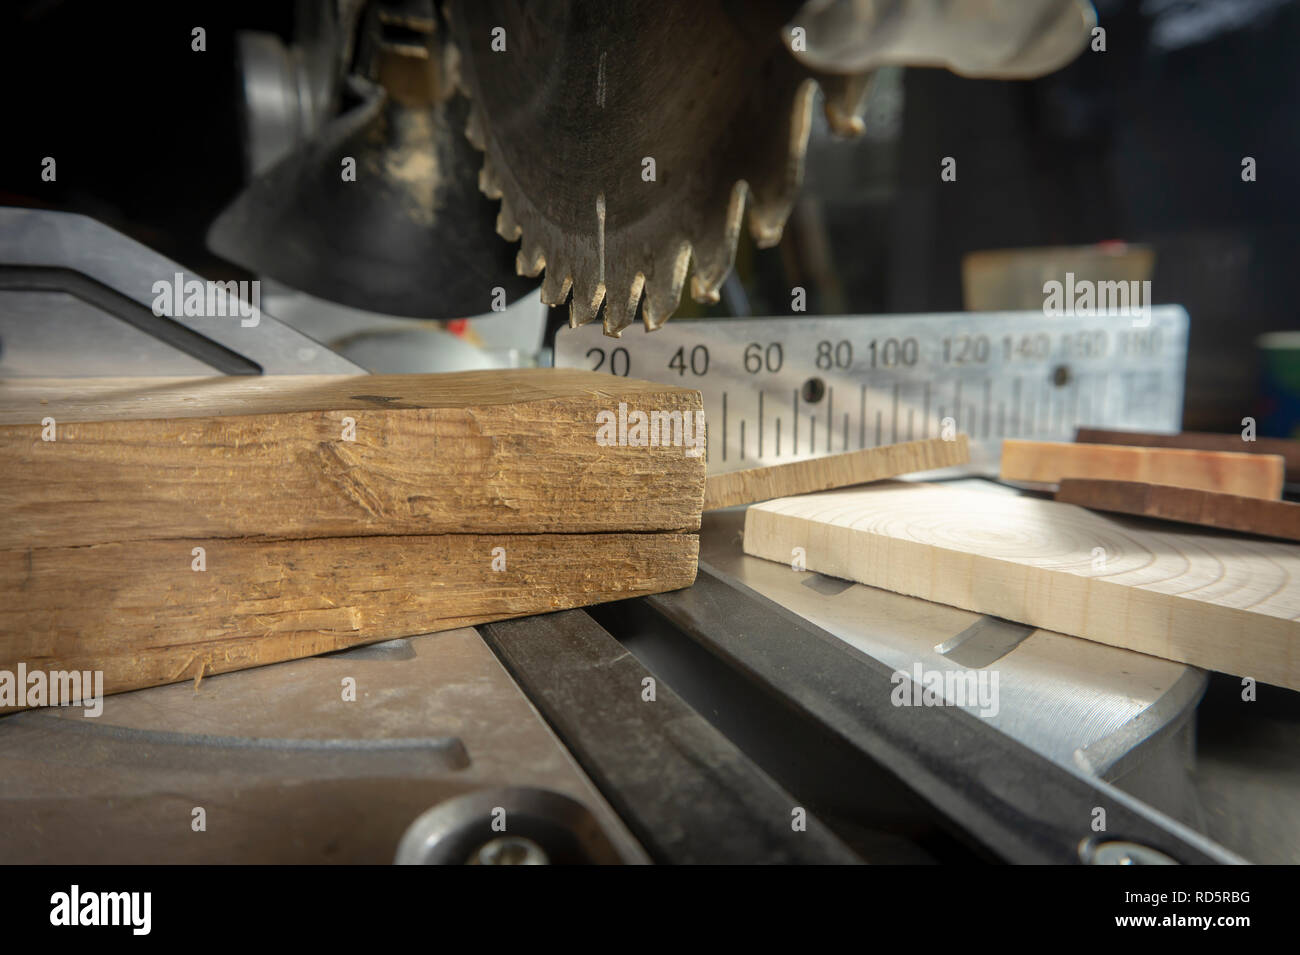 Zähne auf einer kreisförmigen Motorsäge in Nahaufnahme mit verschiedenen Bausteinen aus Holz und Metall Maßstab für Schnittlängen in einem Holzbearbeitung workshop Stockfoto